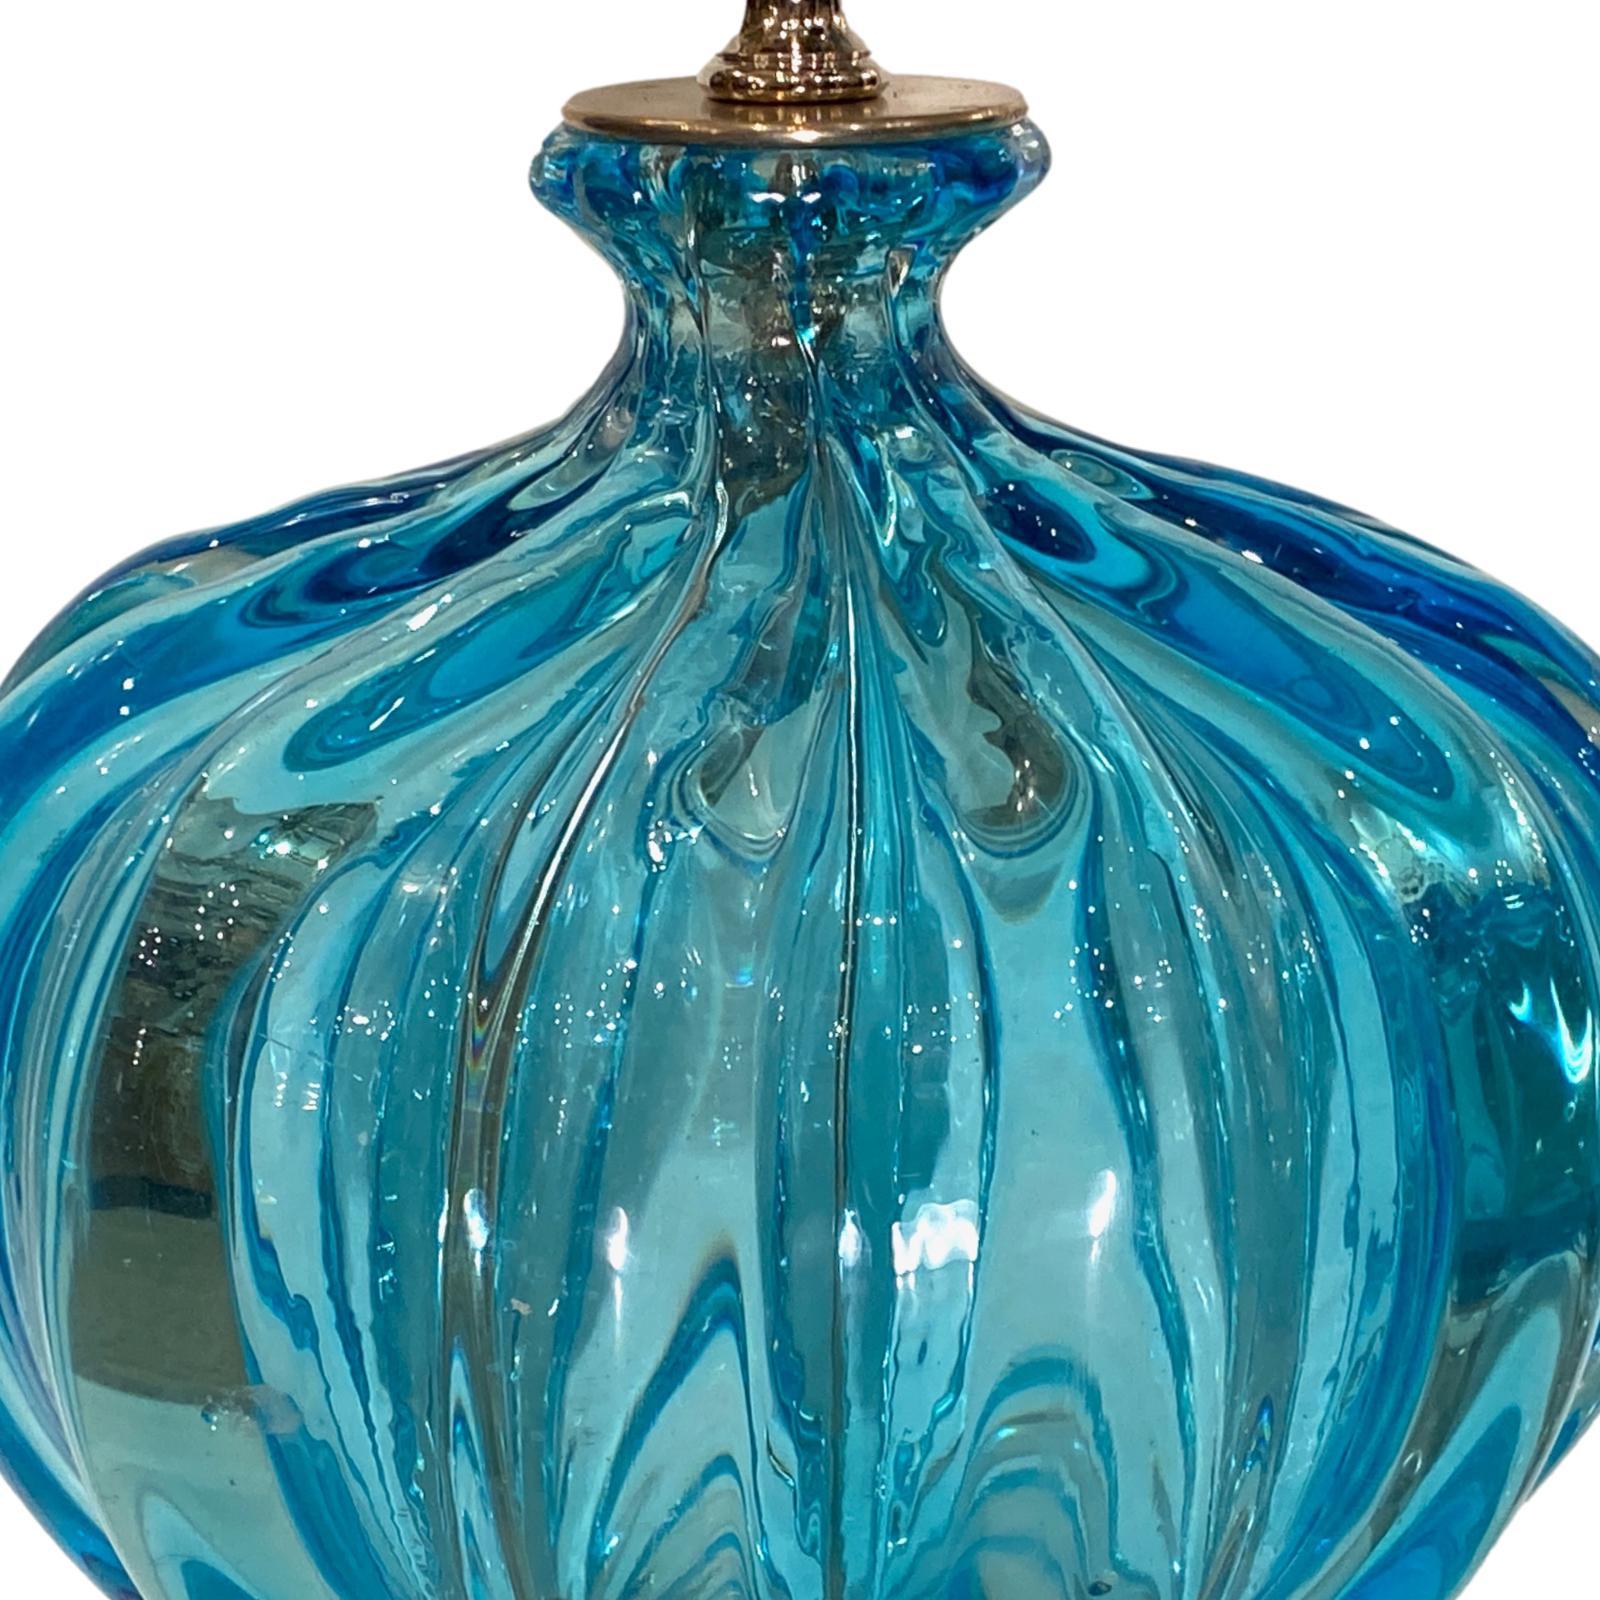 Paire de lampes de Murano en verre bleu des années 1930, avec verre gravé et bases nickelées.

Mesures :
Hauteur du corps : 14 pouces
Hauteur jusqu'au support de l'abat-jour : 23